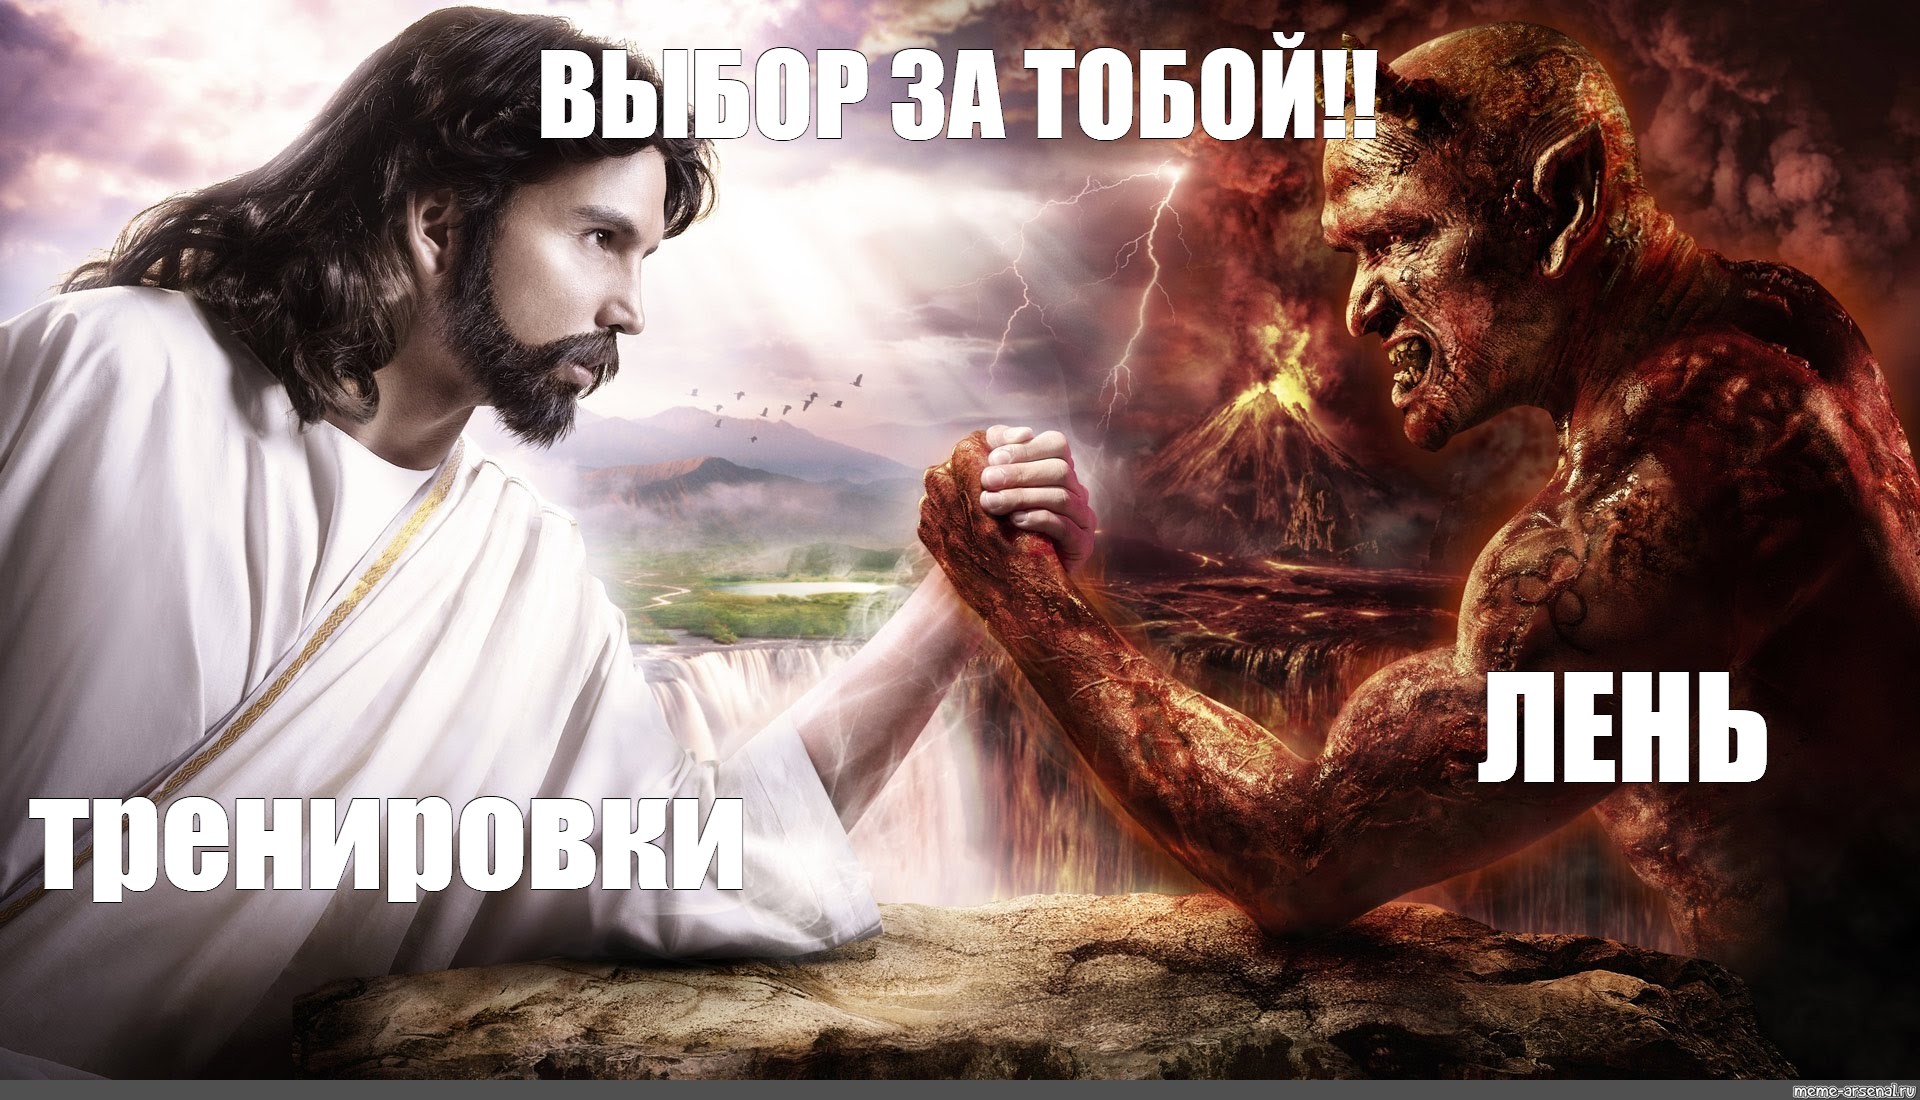 Бог против сатаны